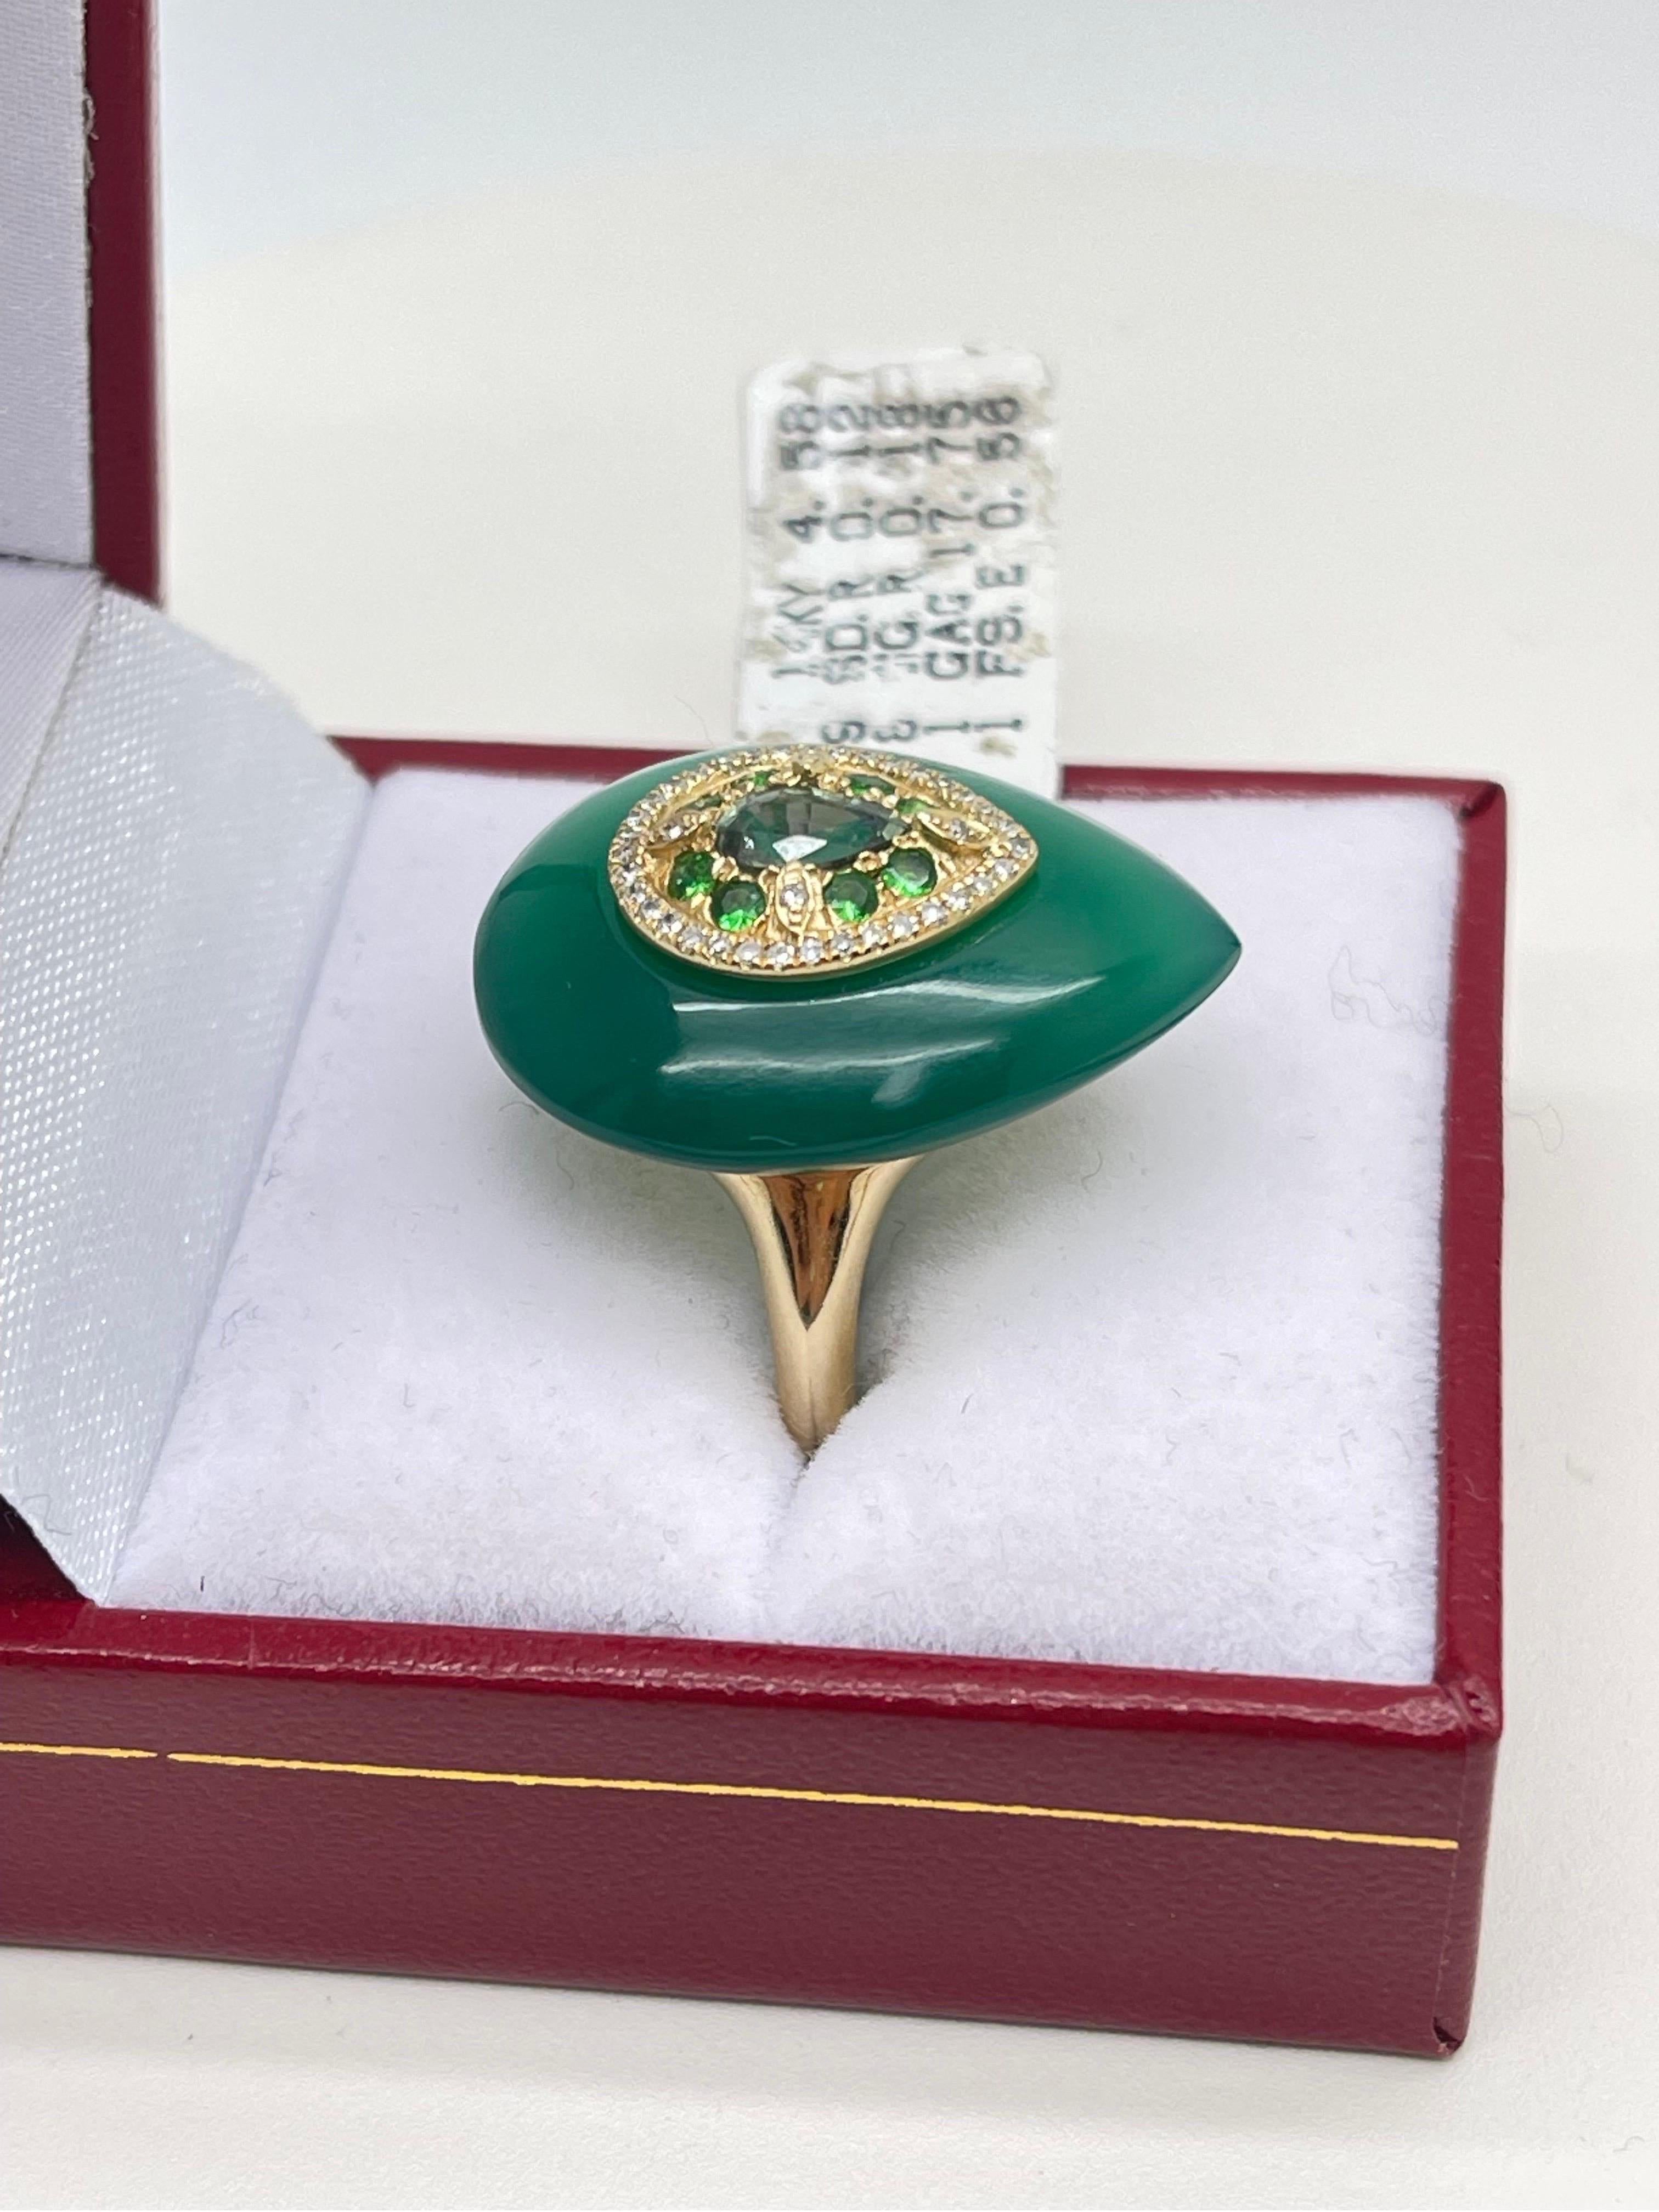 Vintage Grüner Achat, Smaragd, Diamant & Grüner Granat Ring in 14k. Größe 6,5.

- 39 Diamanten im Rundschliff 0,12 tcw,

- 8 grüne Granate 0,18 tcw,

- 1 grüner Achat 17,75 tcw,

- 1 Smaragd 0,56 tcw